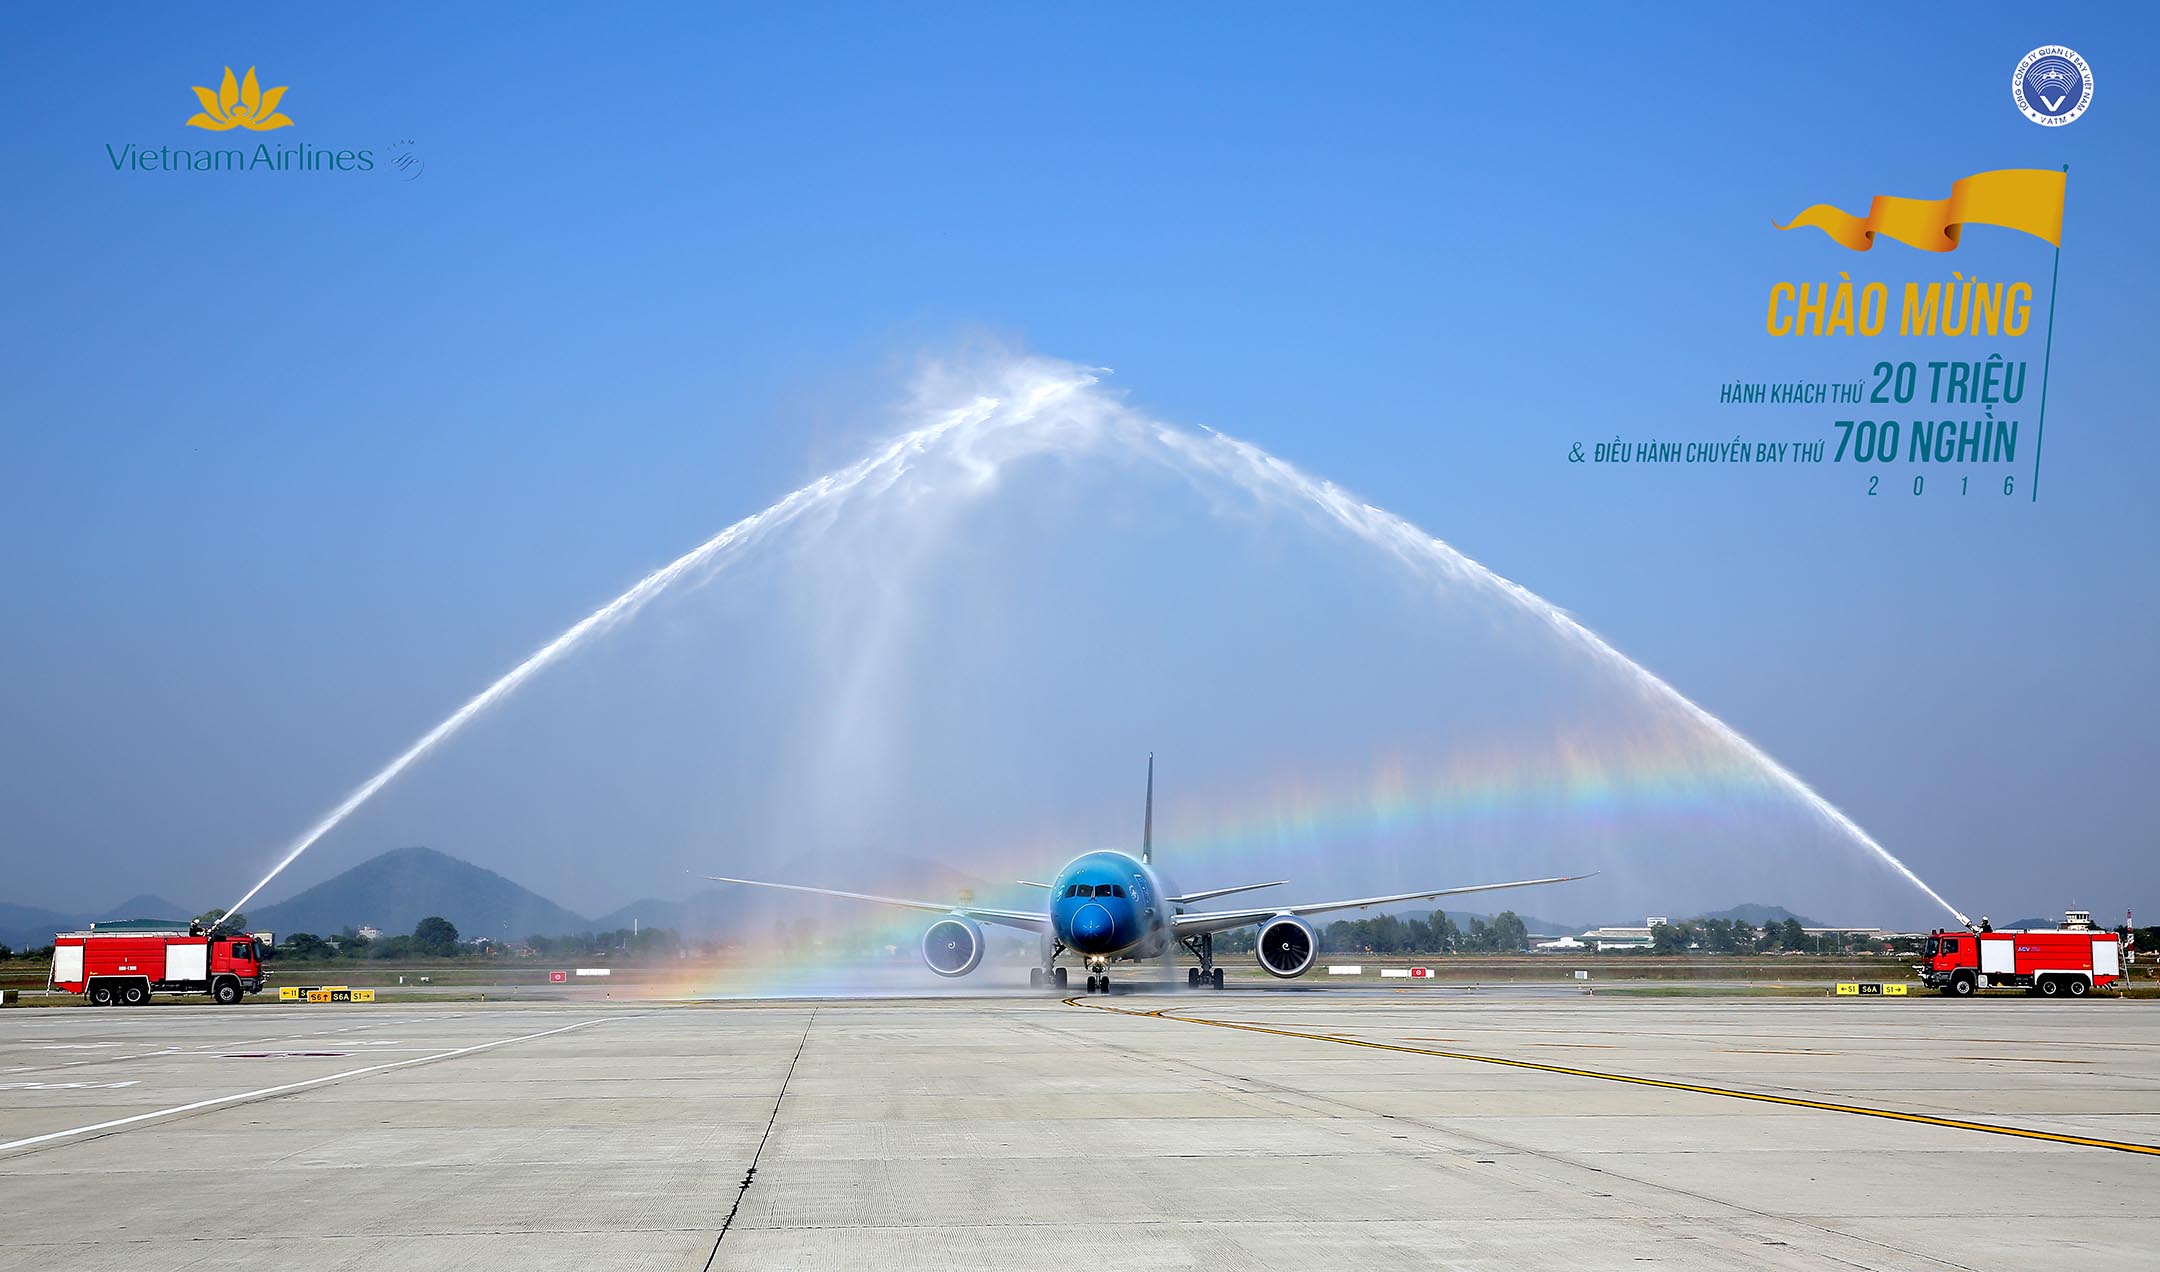 VATM: Tổ chức chào đón chuyến bay thứ 700 nghìn trong năm 2016